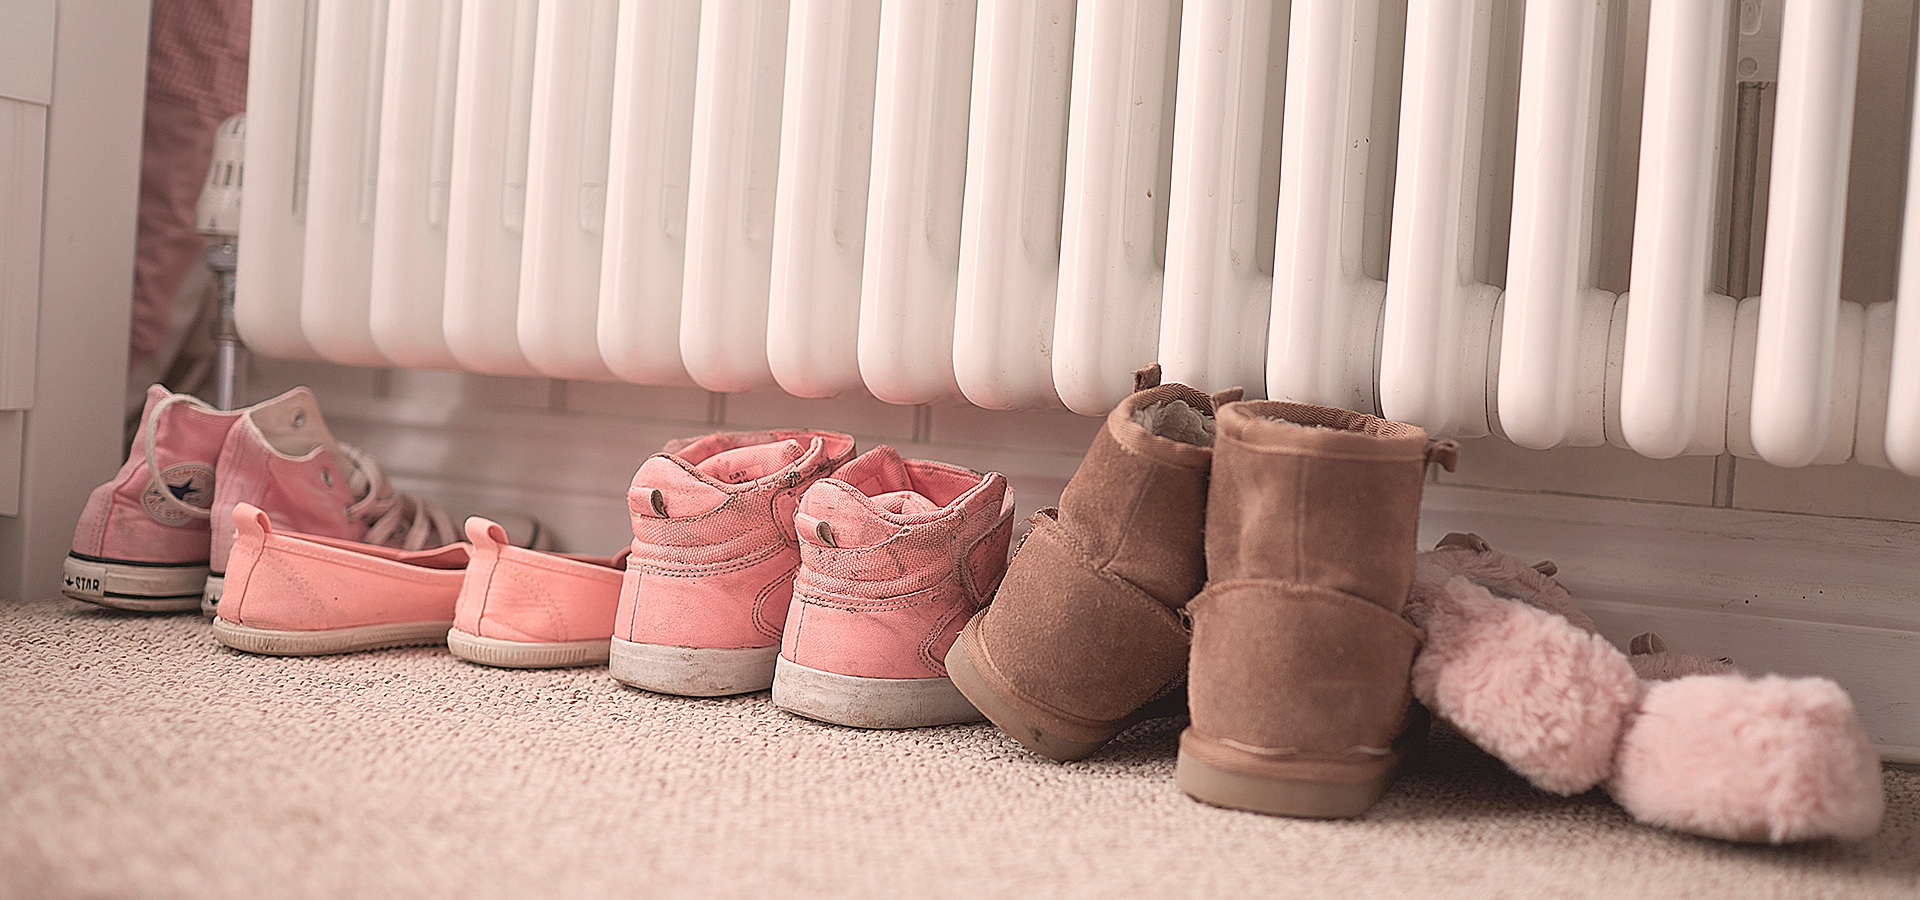 5 par sko står under en radiator